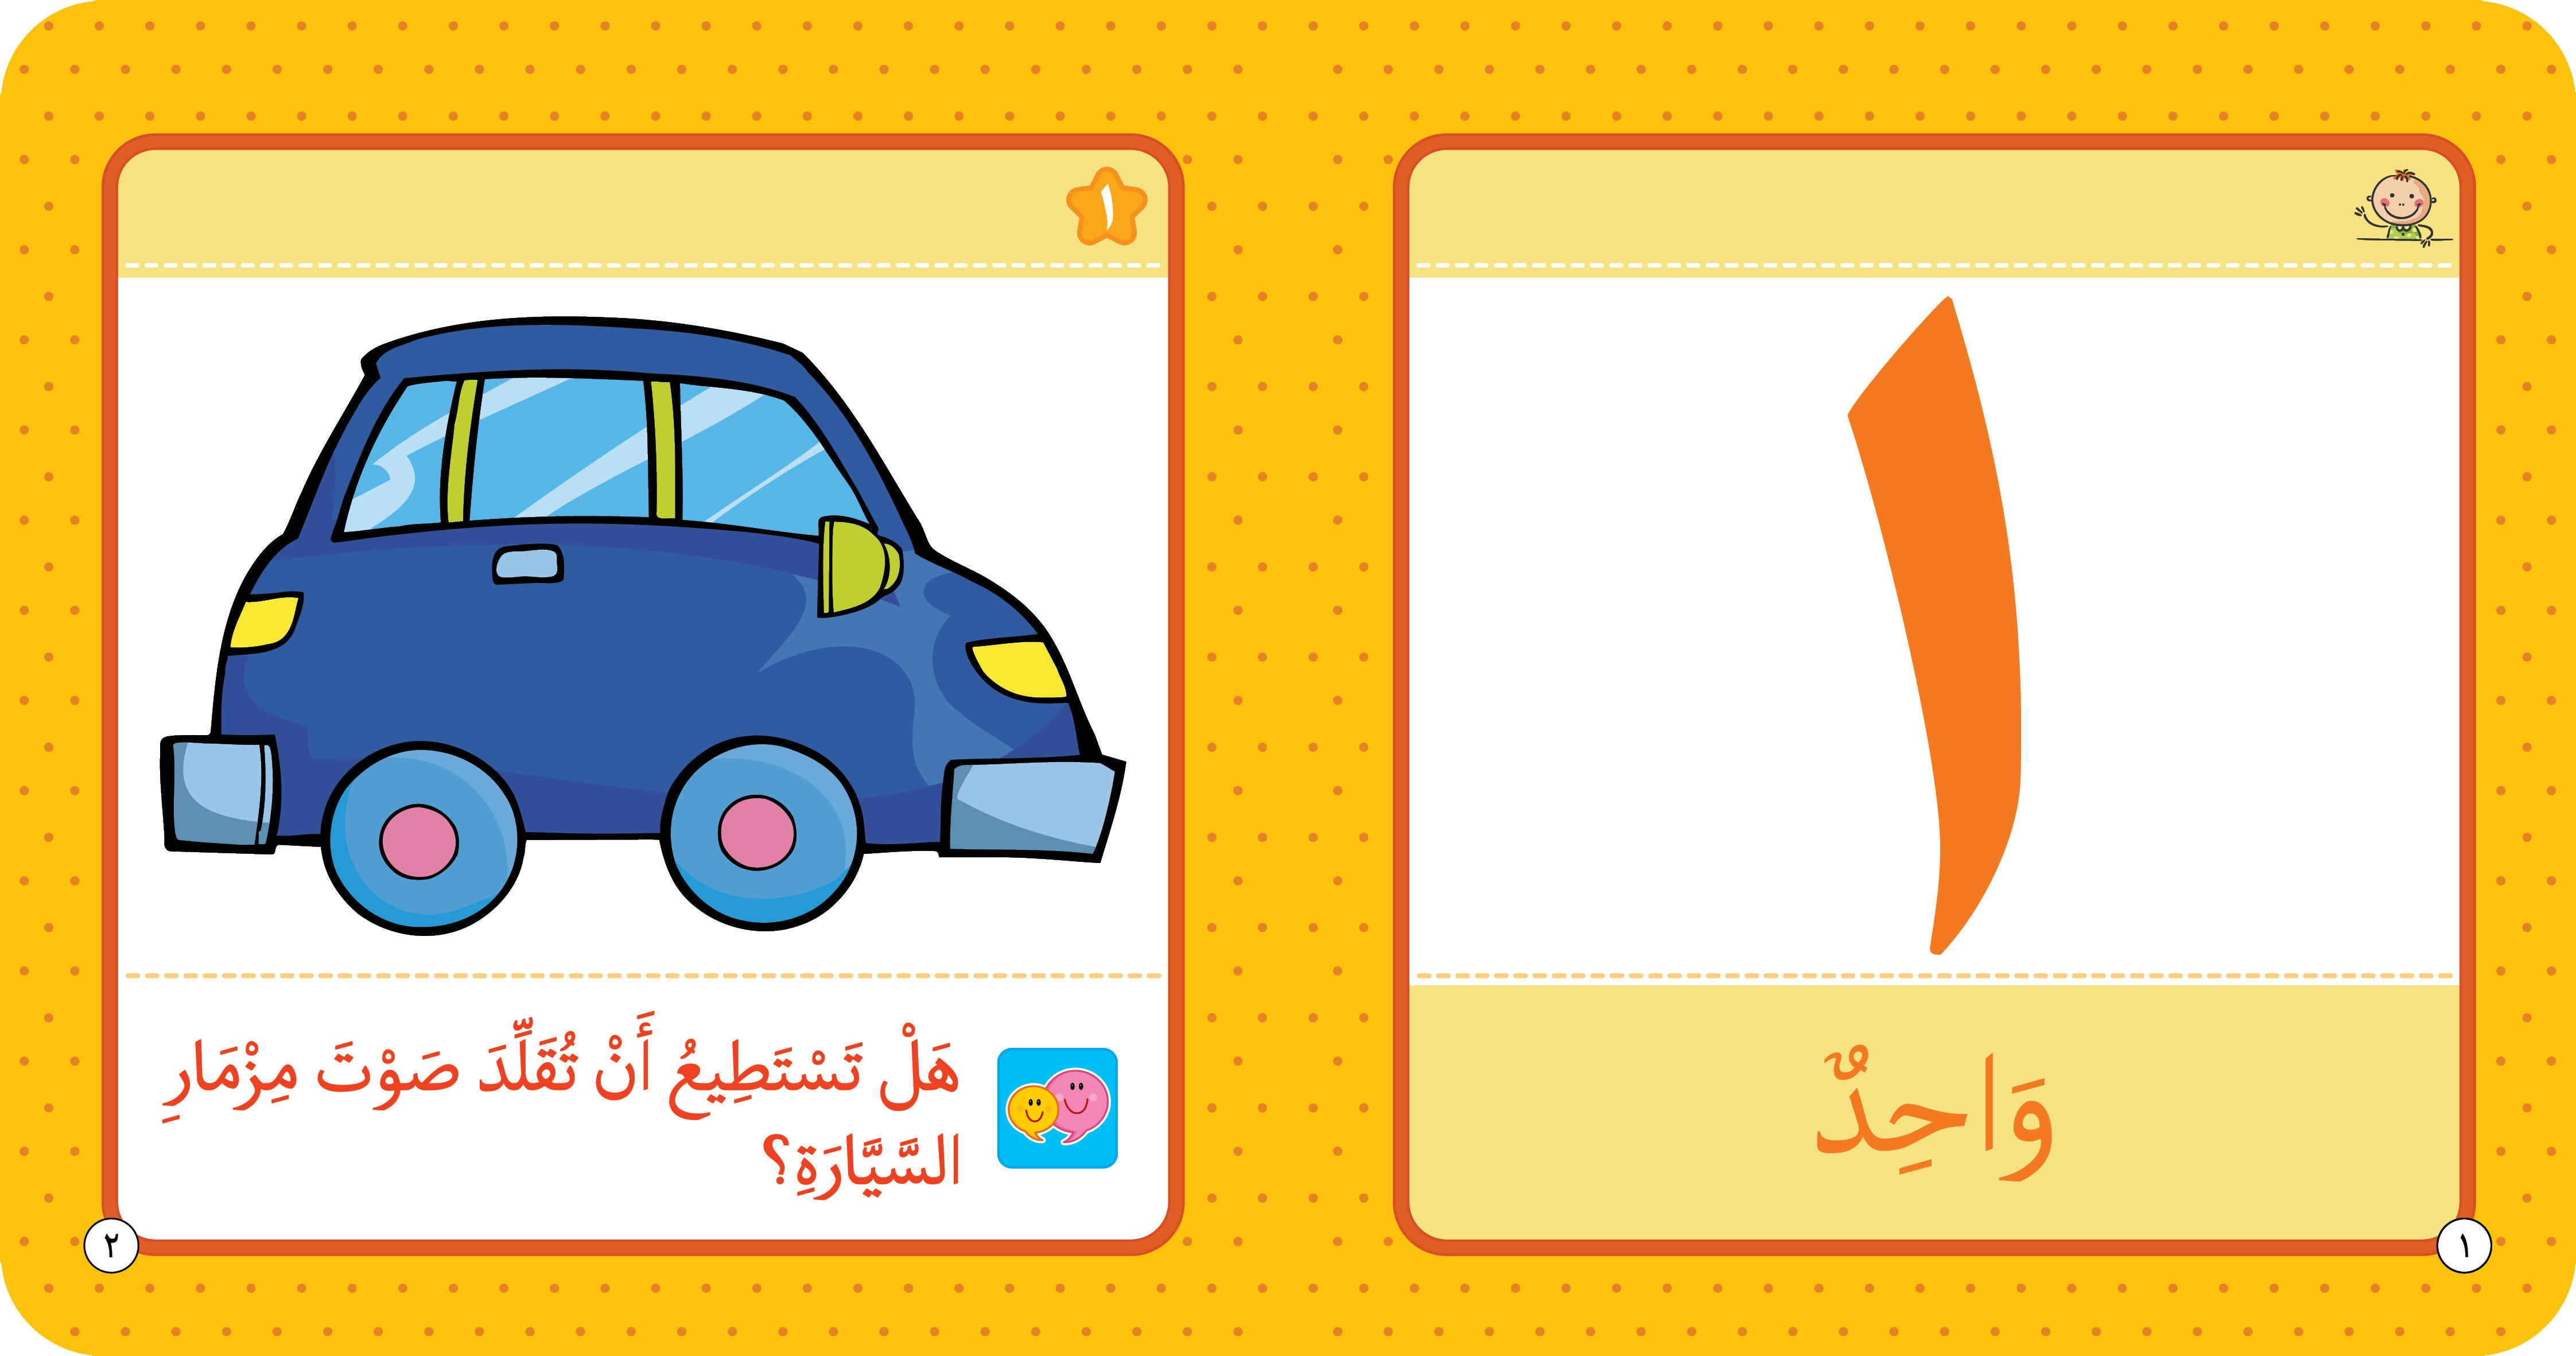  الأعداد - كتاب تعليمي للأطفال باللغة العربية